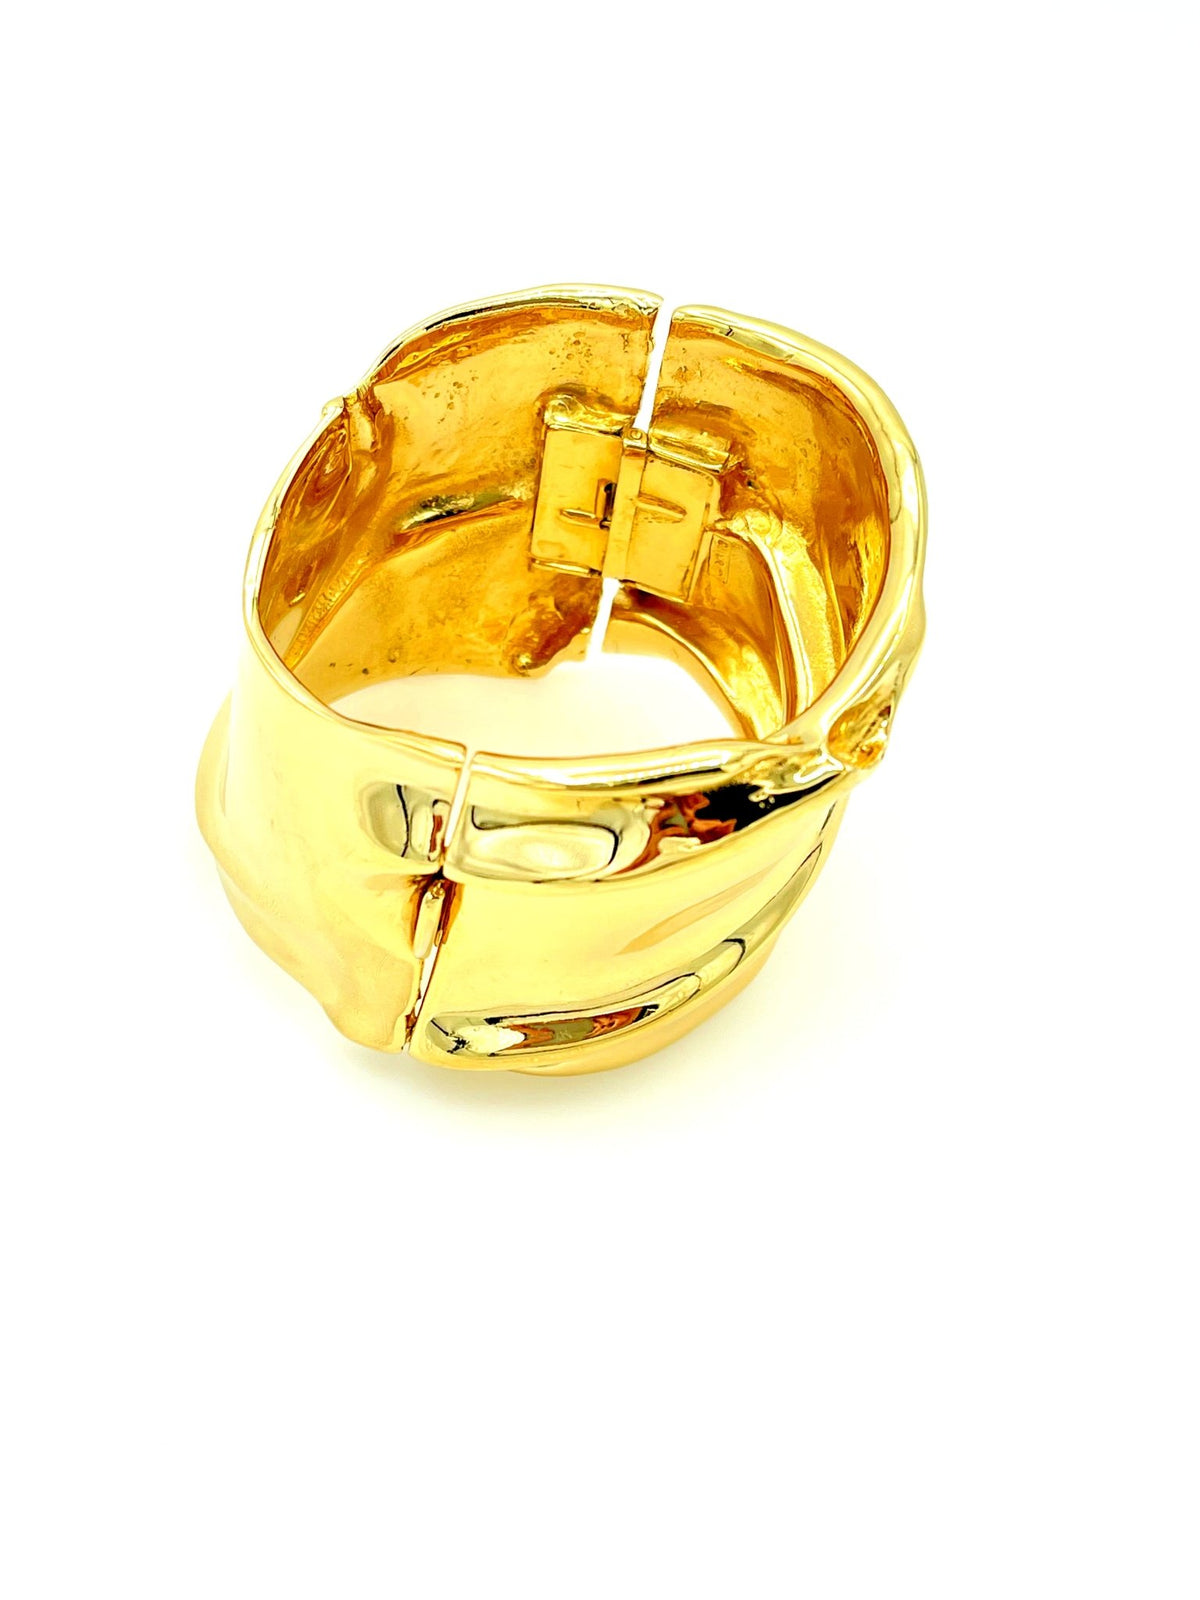 Joanne Cooper for Ciner Wide Gold Modernist Hinged Bangle Bracelet - 24 Wishes Vintage Jewelry